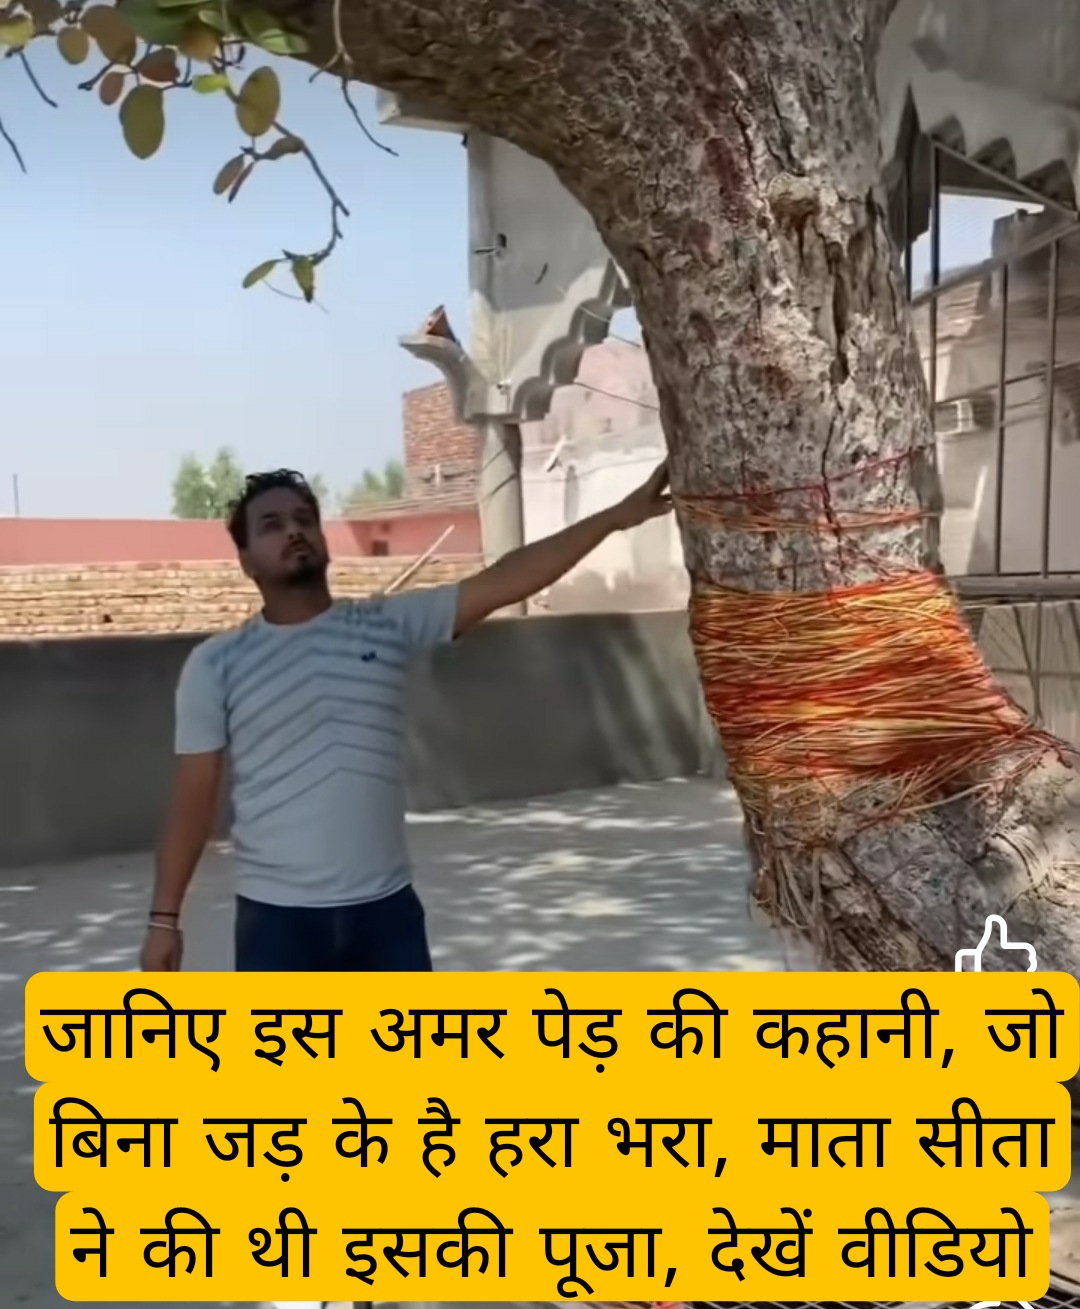 चमत्कार : जानिए इस अमर पेड़ की कहानी, जो बिना जड़ के है हरा भरा, माता सीता ने की थी इसकी पूजा, देखें वीडियो